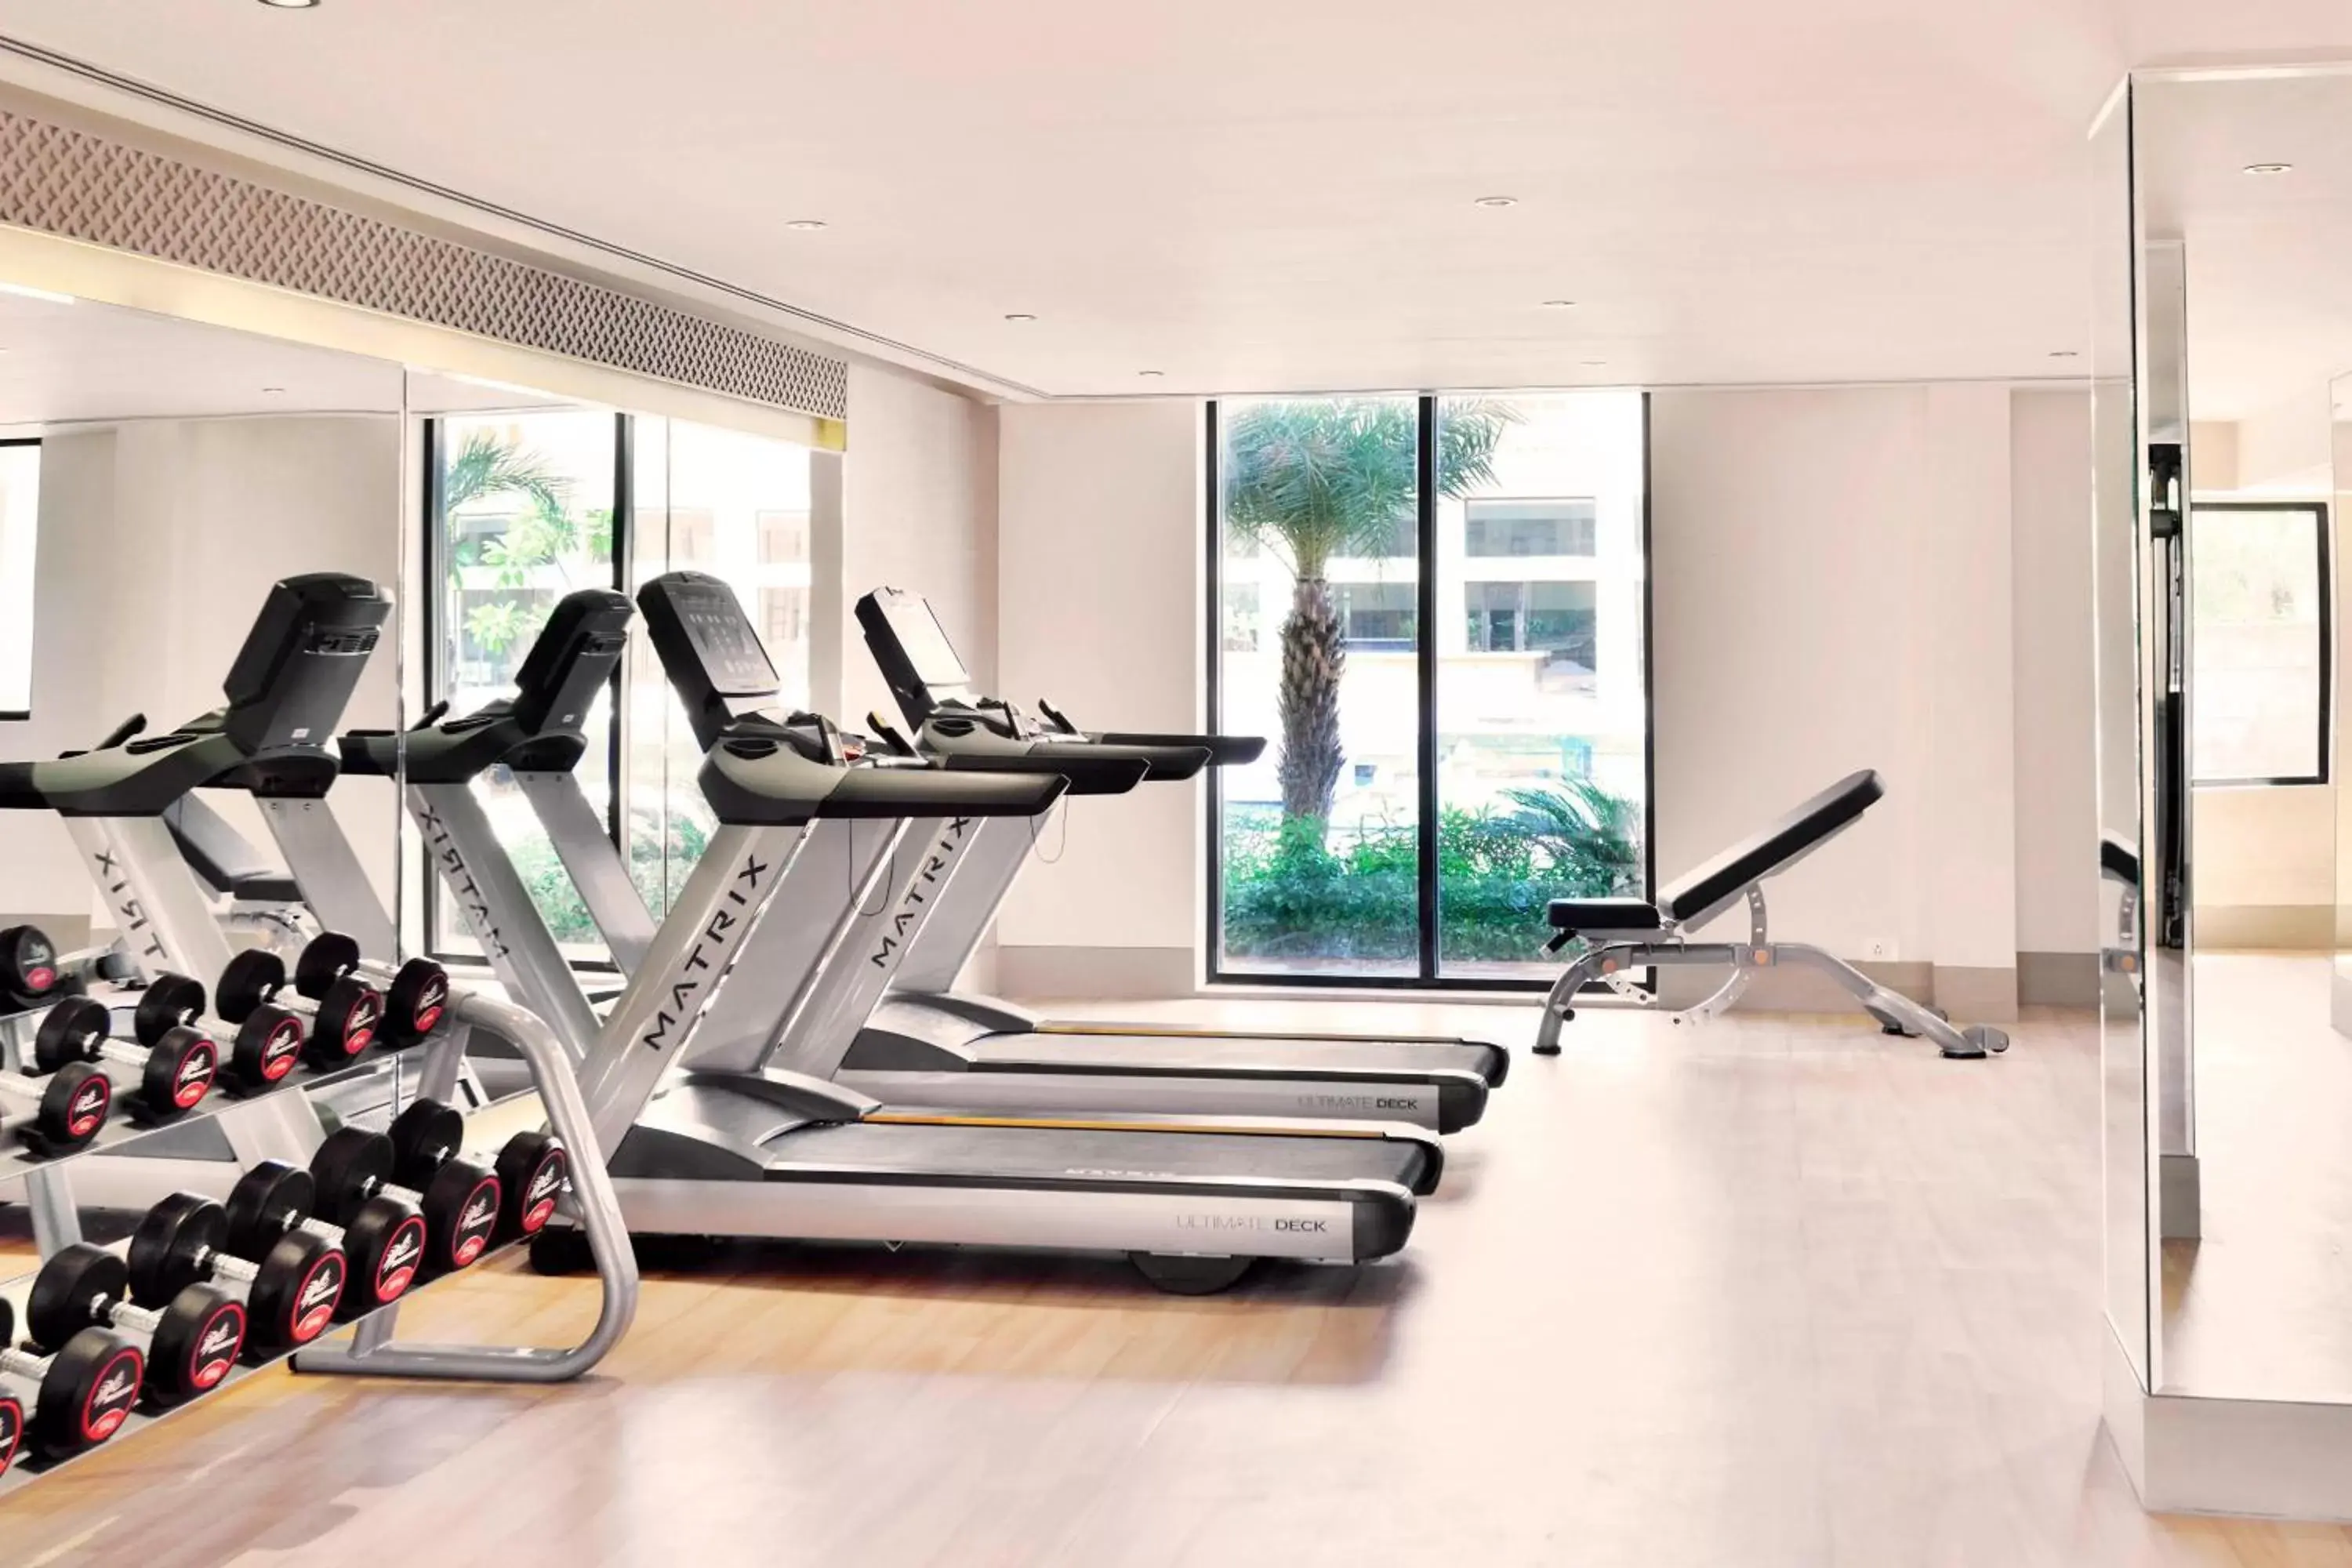 Fitness centre/facilities, Fitness Center/Facilities in Jaisalmer Marriott Resort & Spa